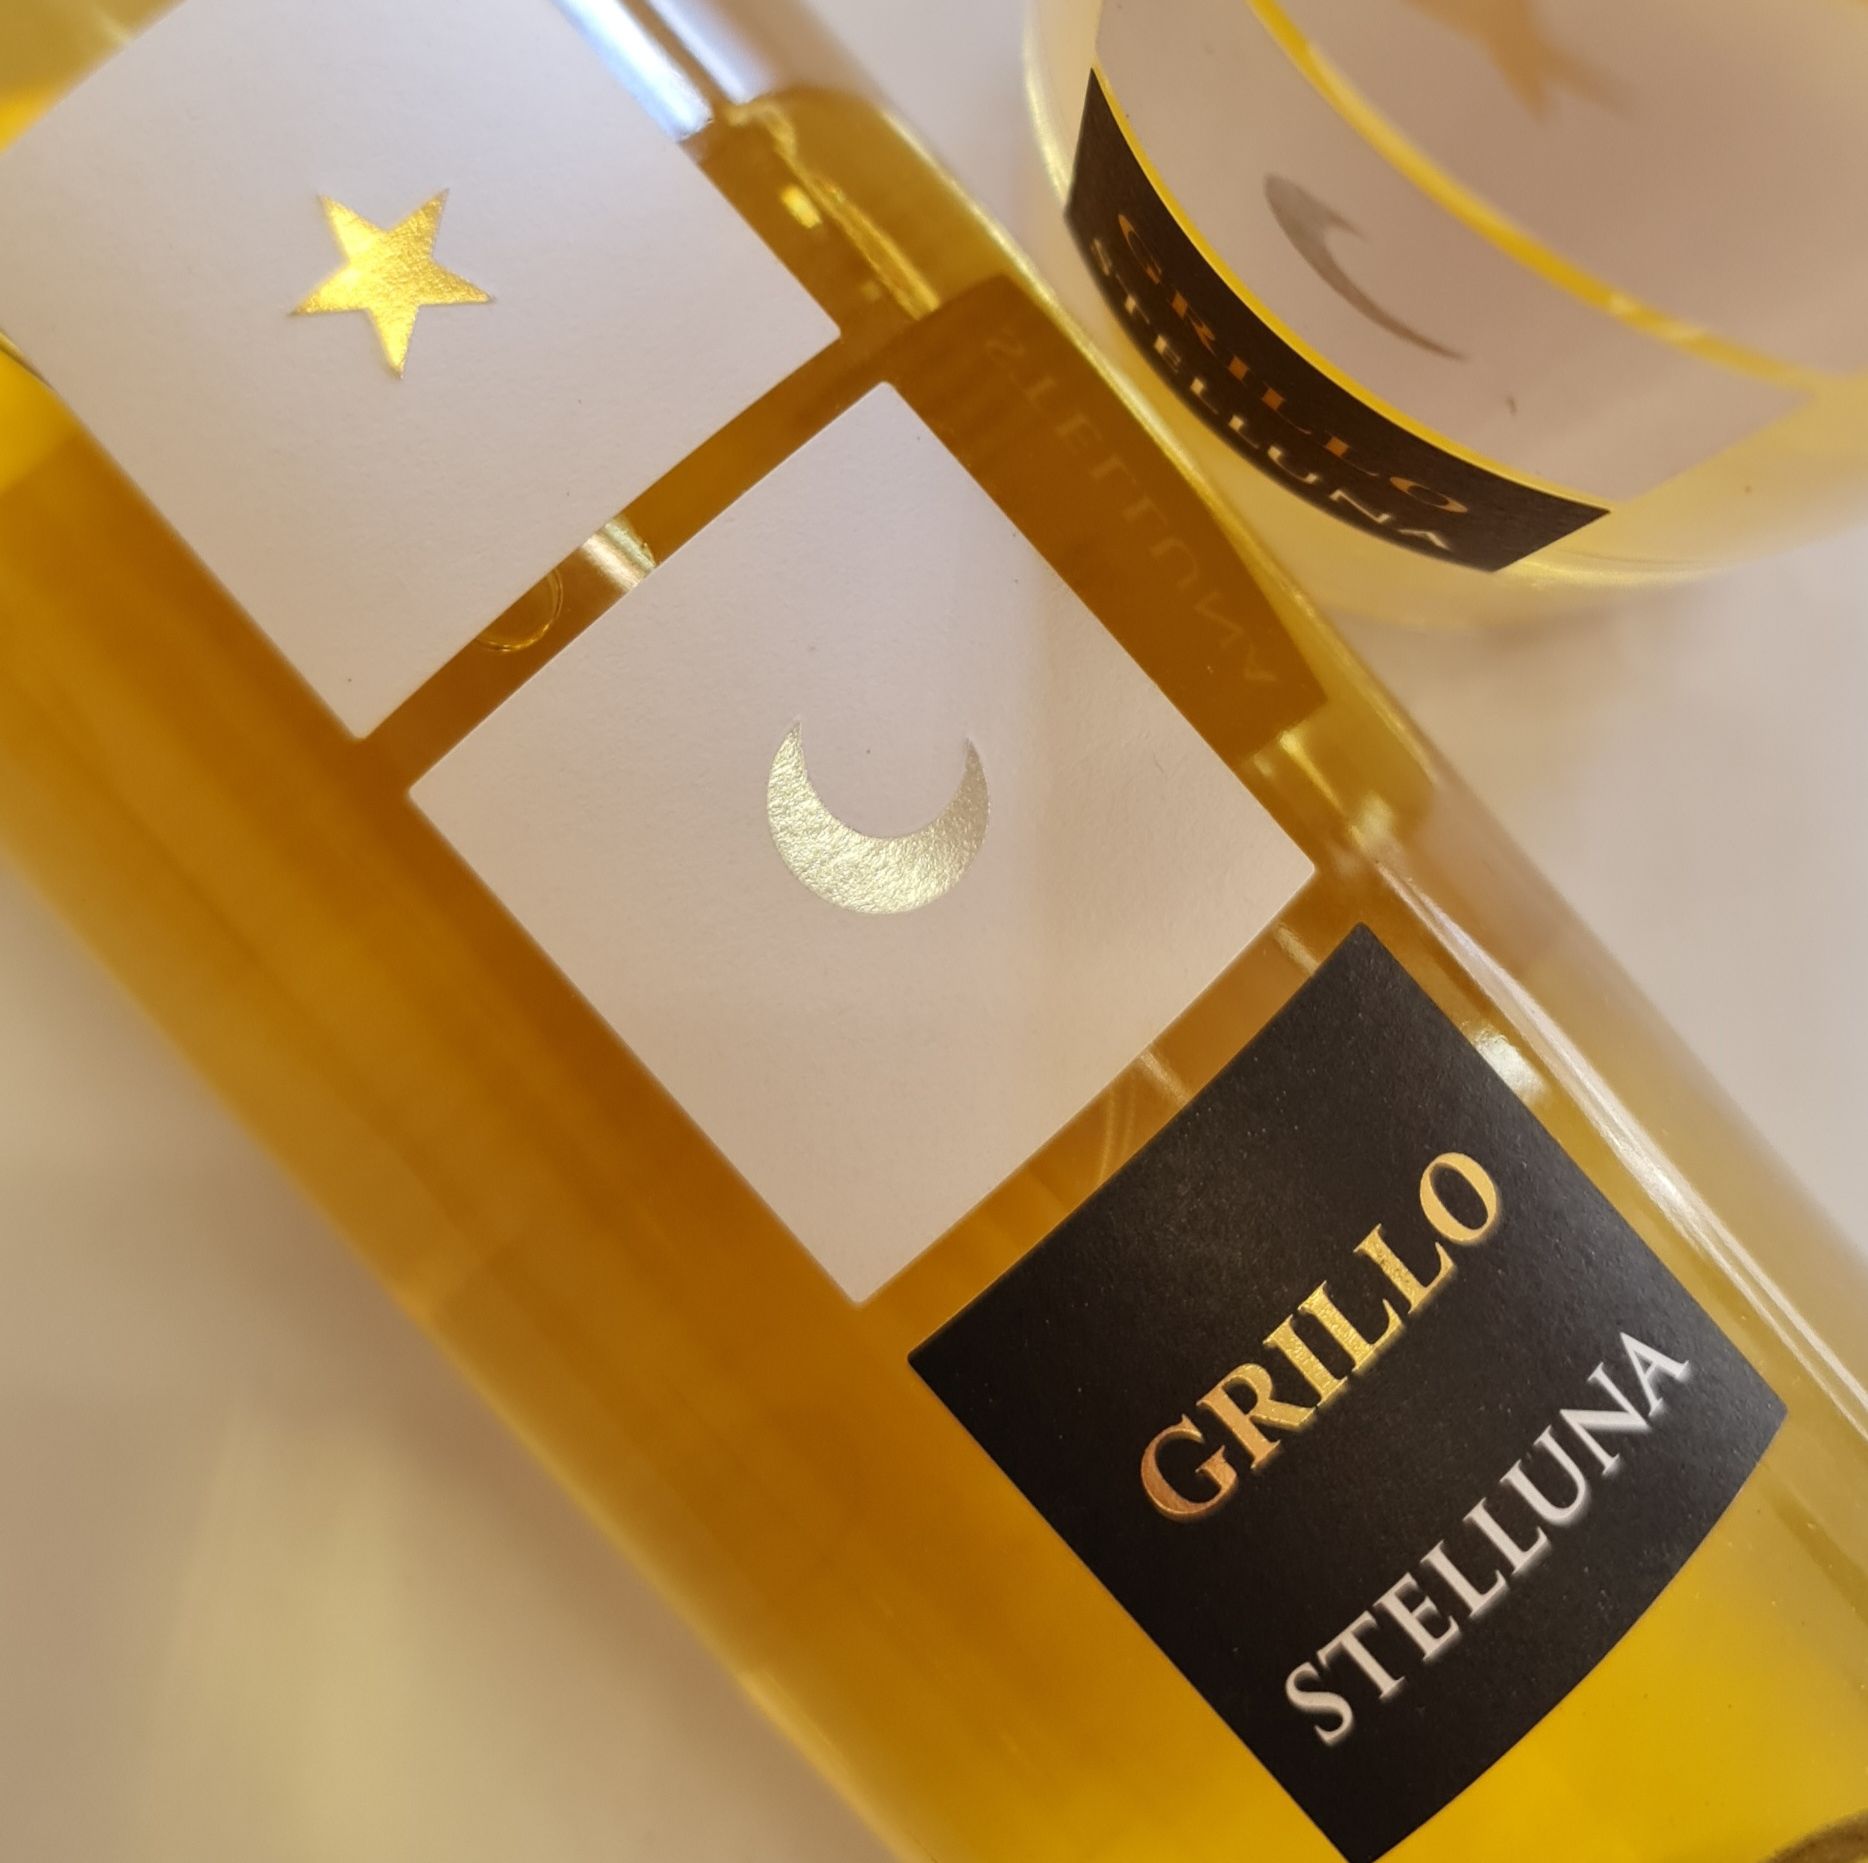 Stelluna Grillo 2018